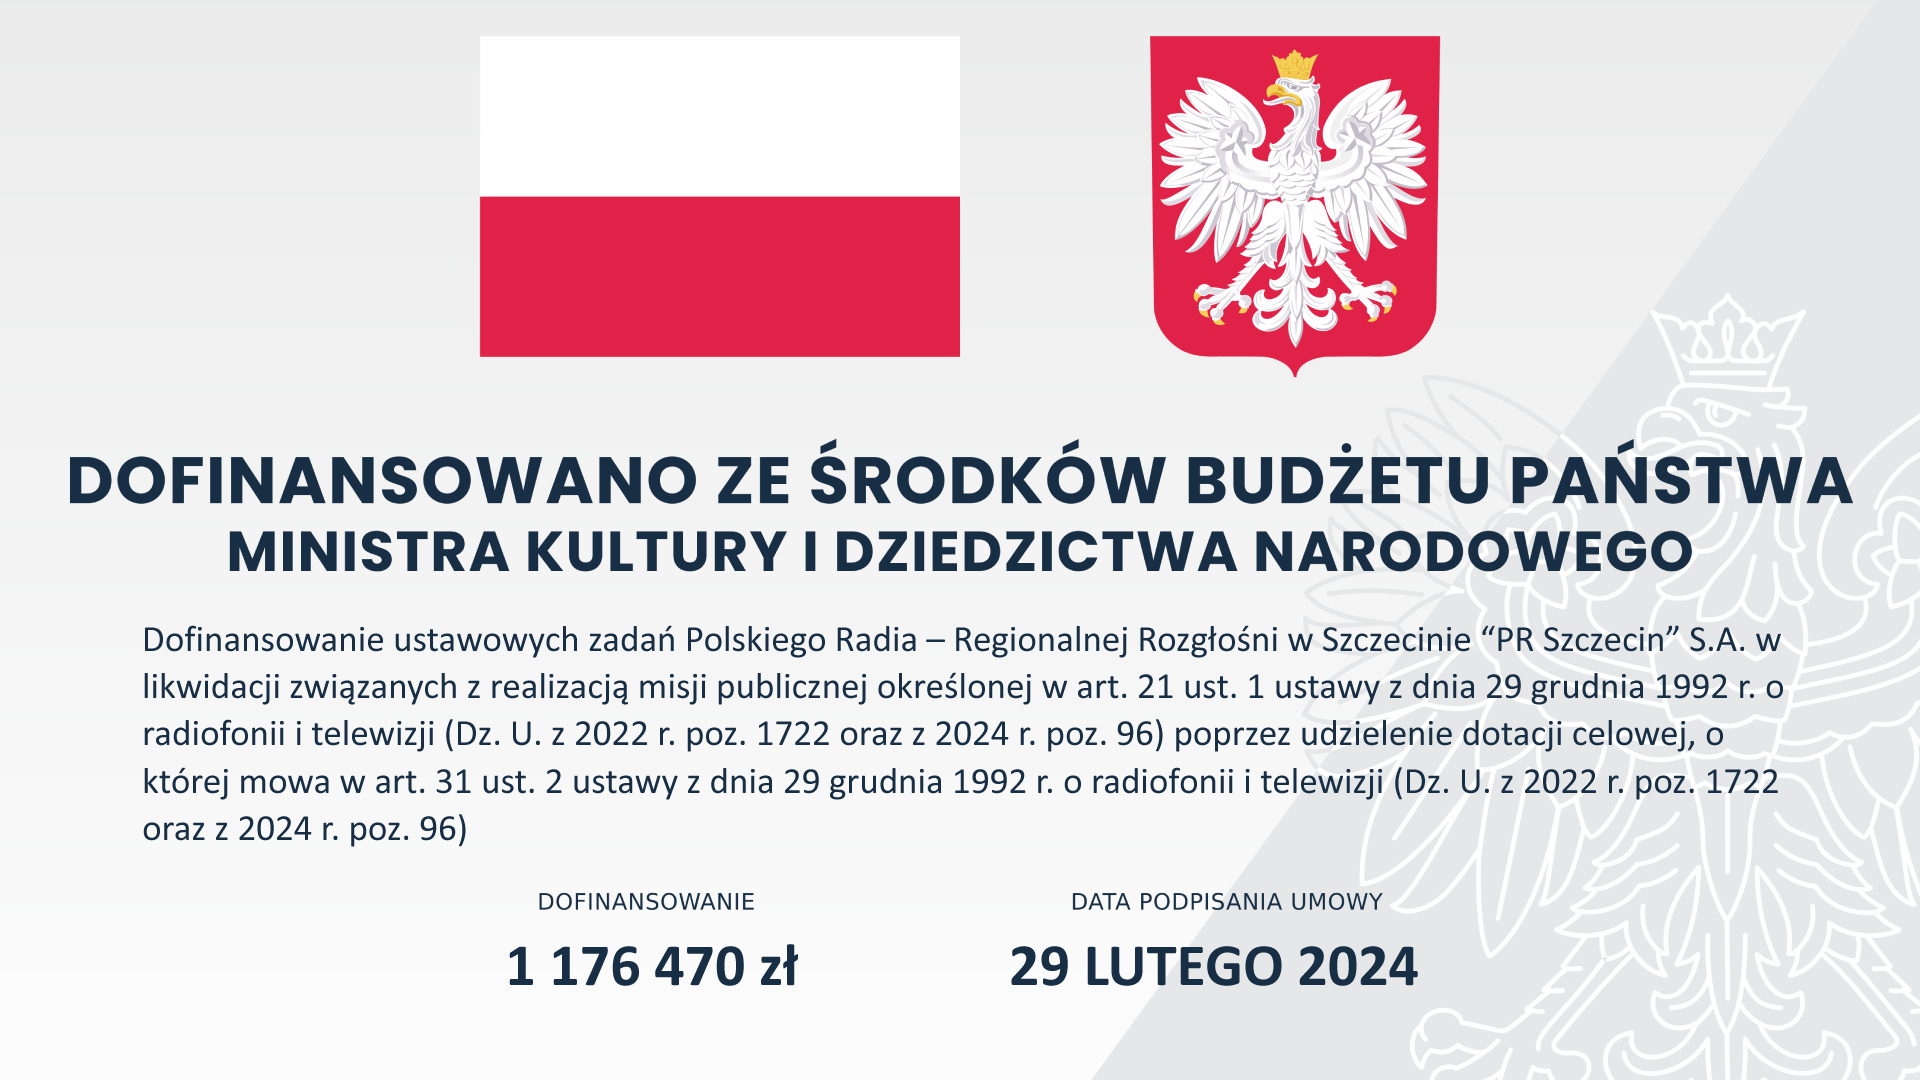 Dofinansowanie Polskiego Radia Szczecin SA w likwidacji ze środków Ministerstwa Kultury i Dziedzictwa Narodowego